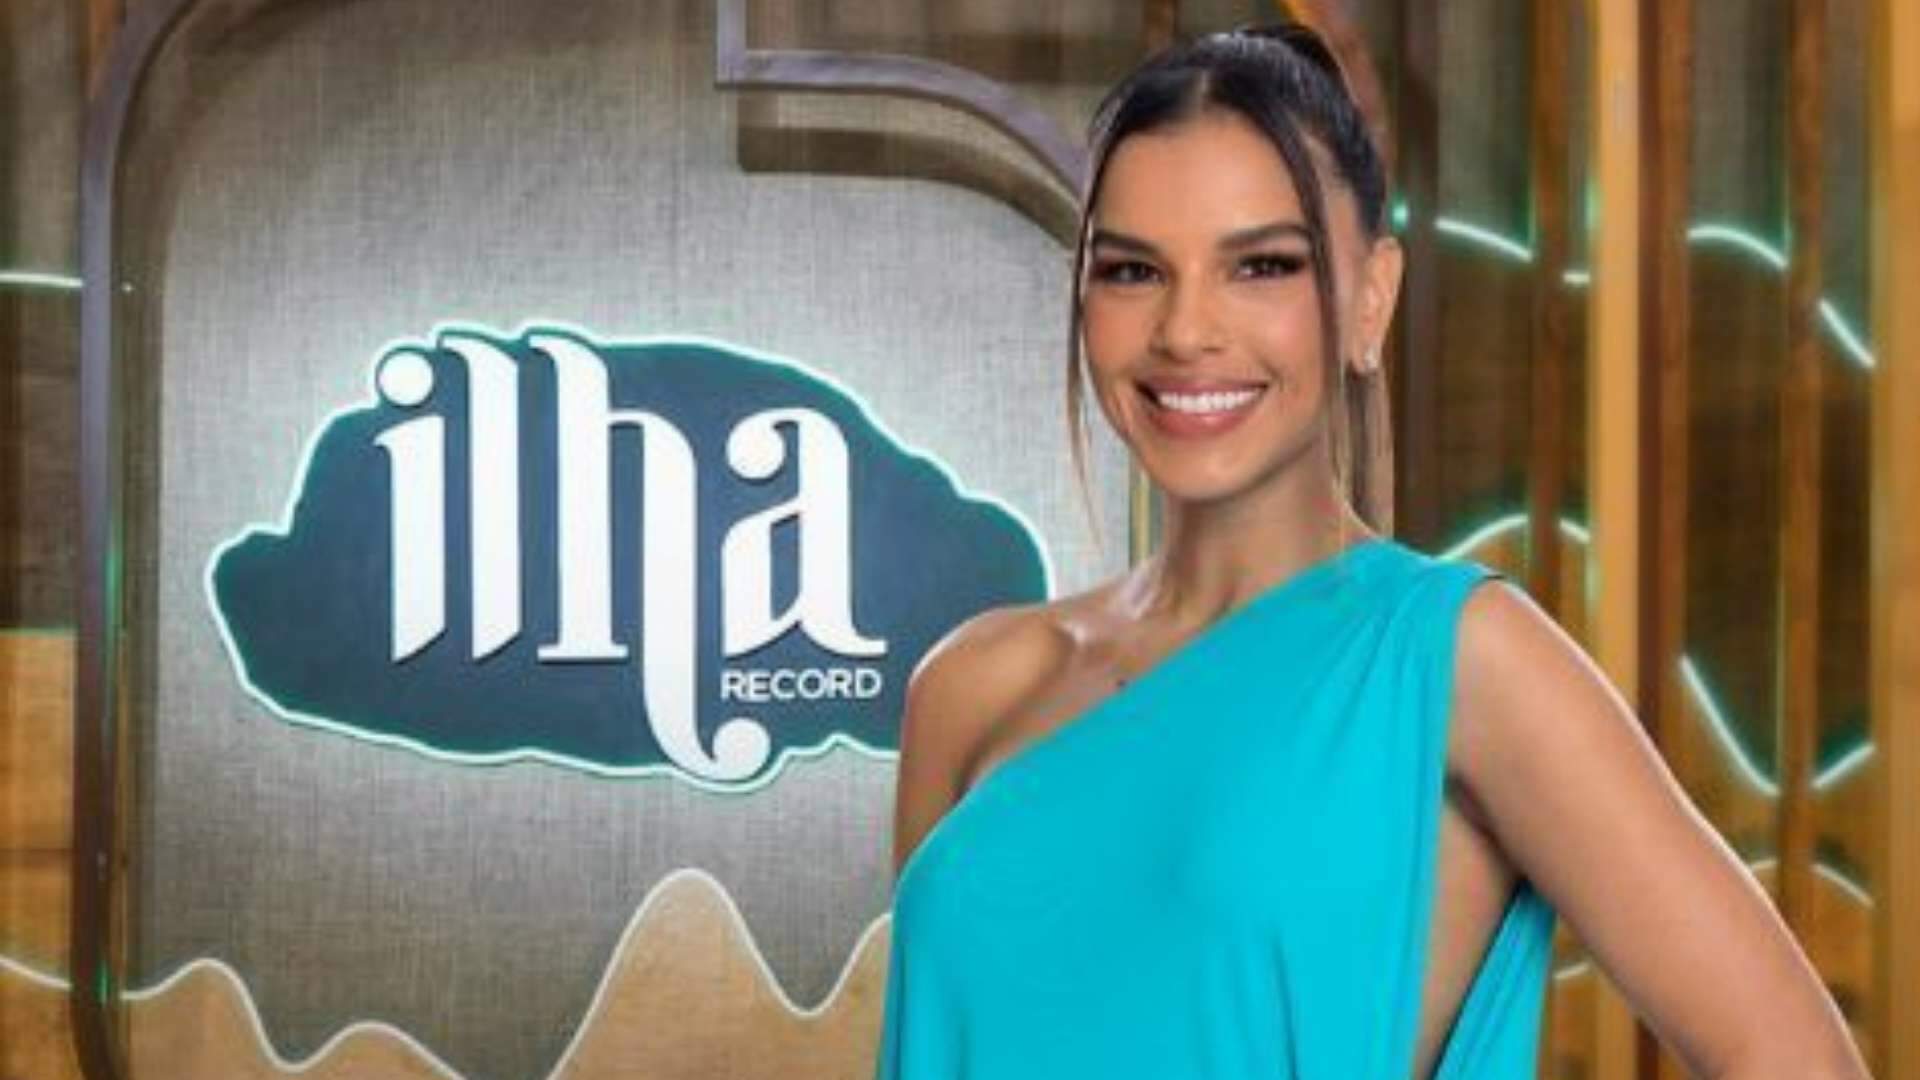 Mariana Rios fala sobre produção do ‘Ilha Record’ e pede mudanças para a emissora: “Não gosto!” - Metropolitana FM